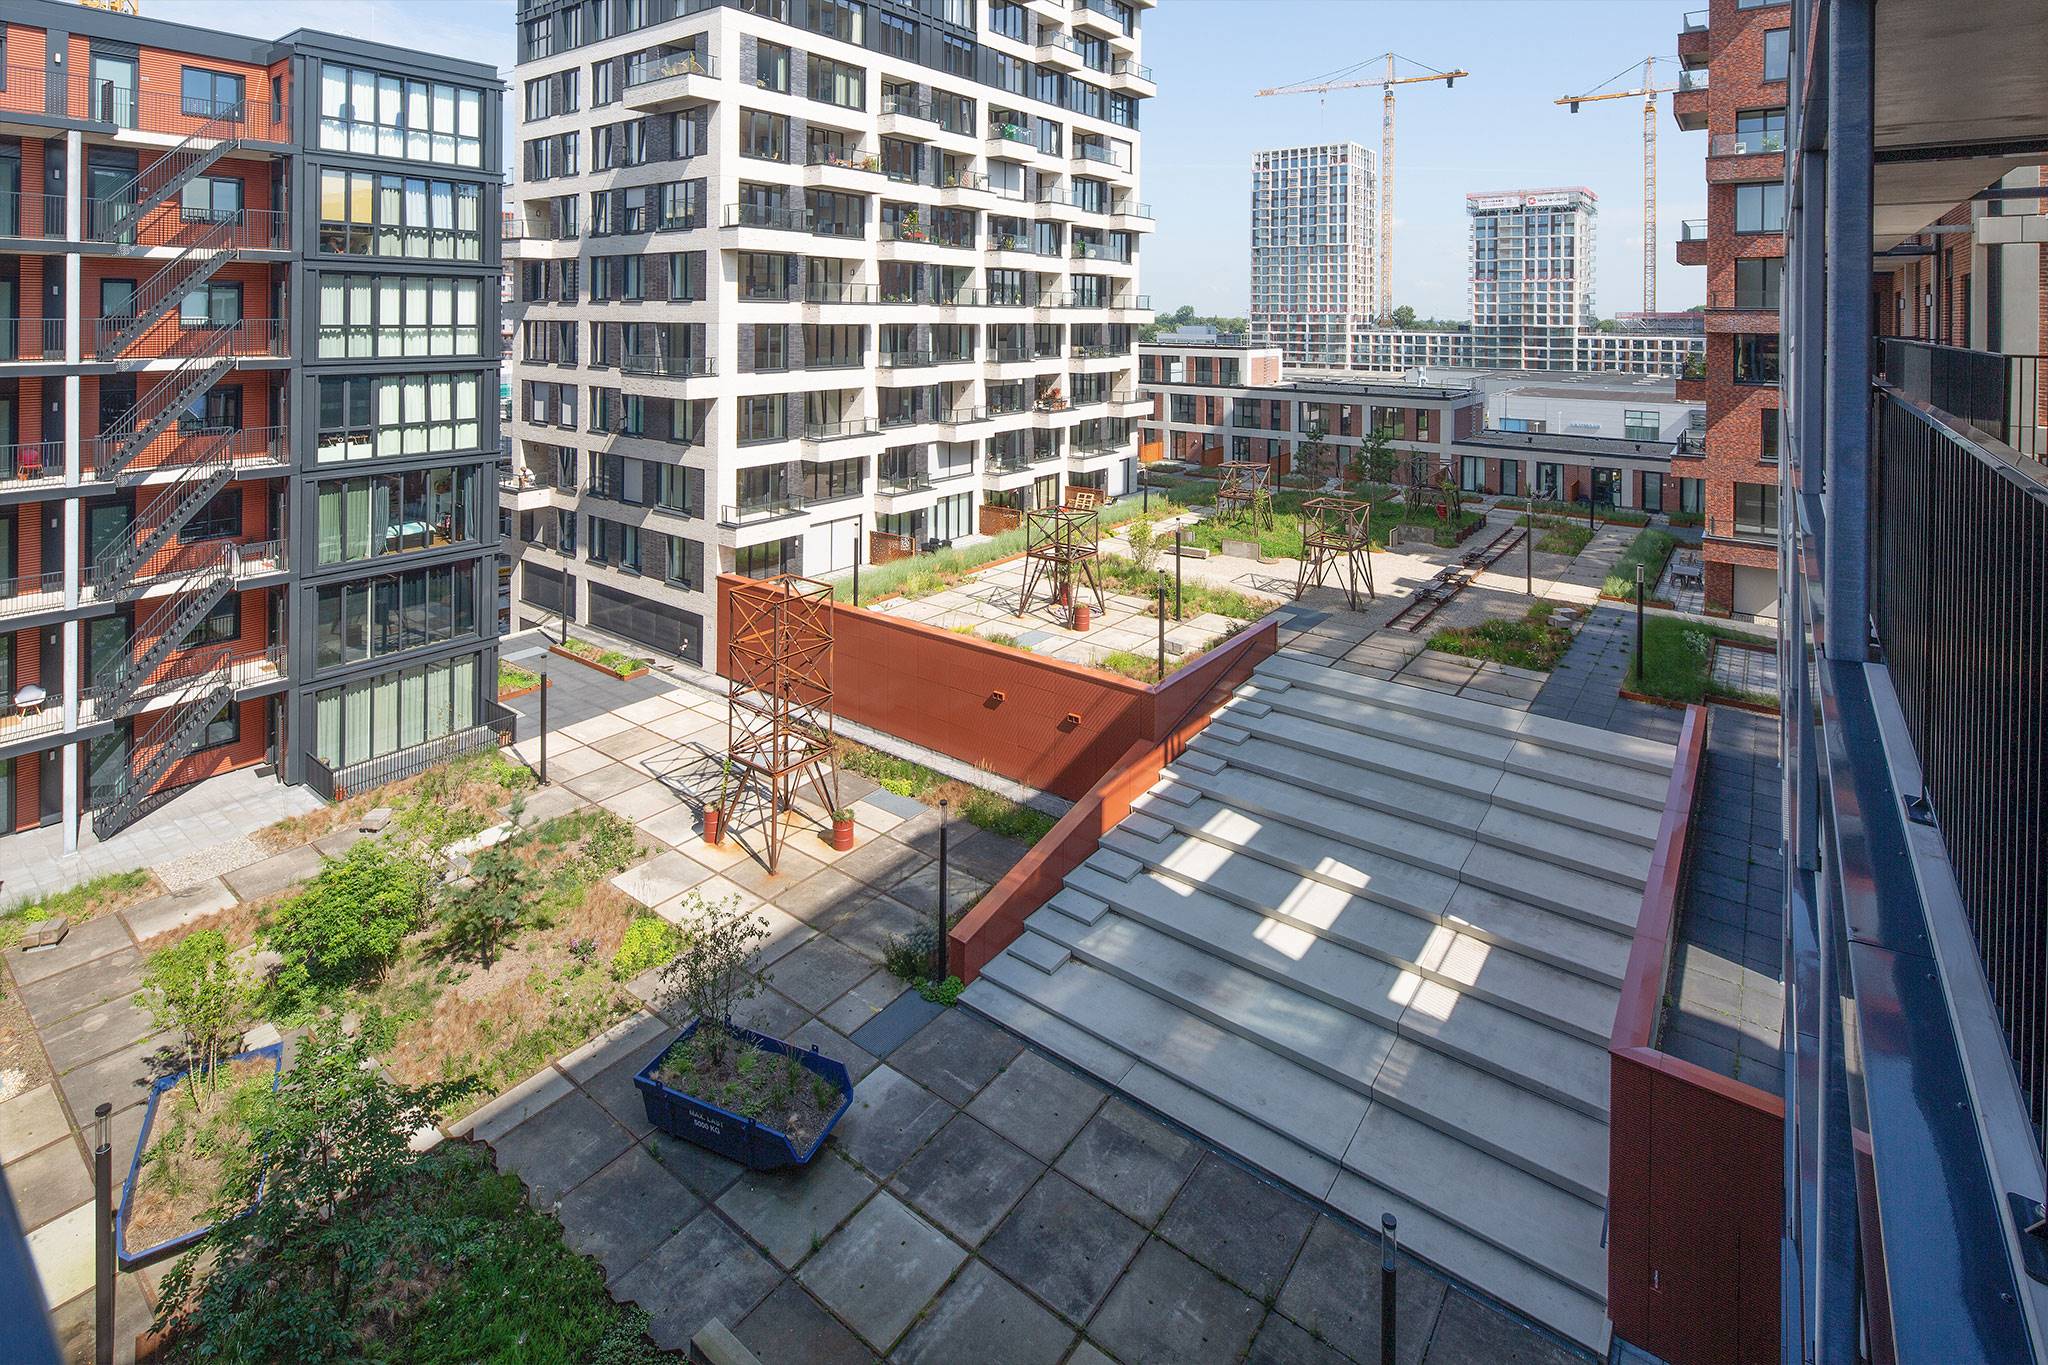 Pontkade, Amsterdam - Wij onderhouden een (semi) openbare ruimte op de NDSM werf voor omringende woningen